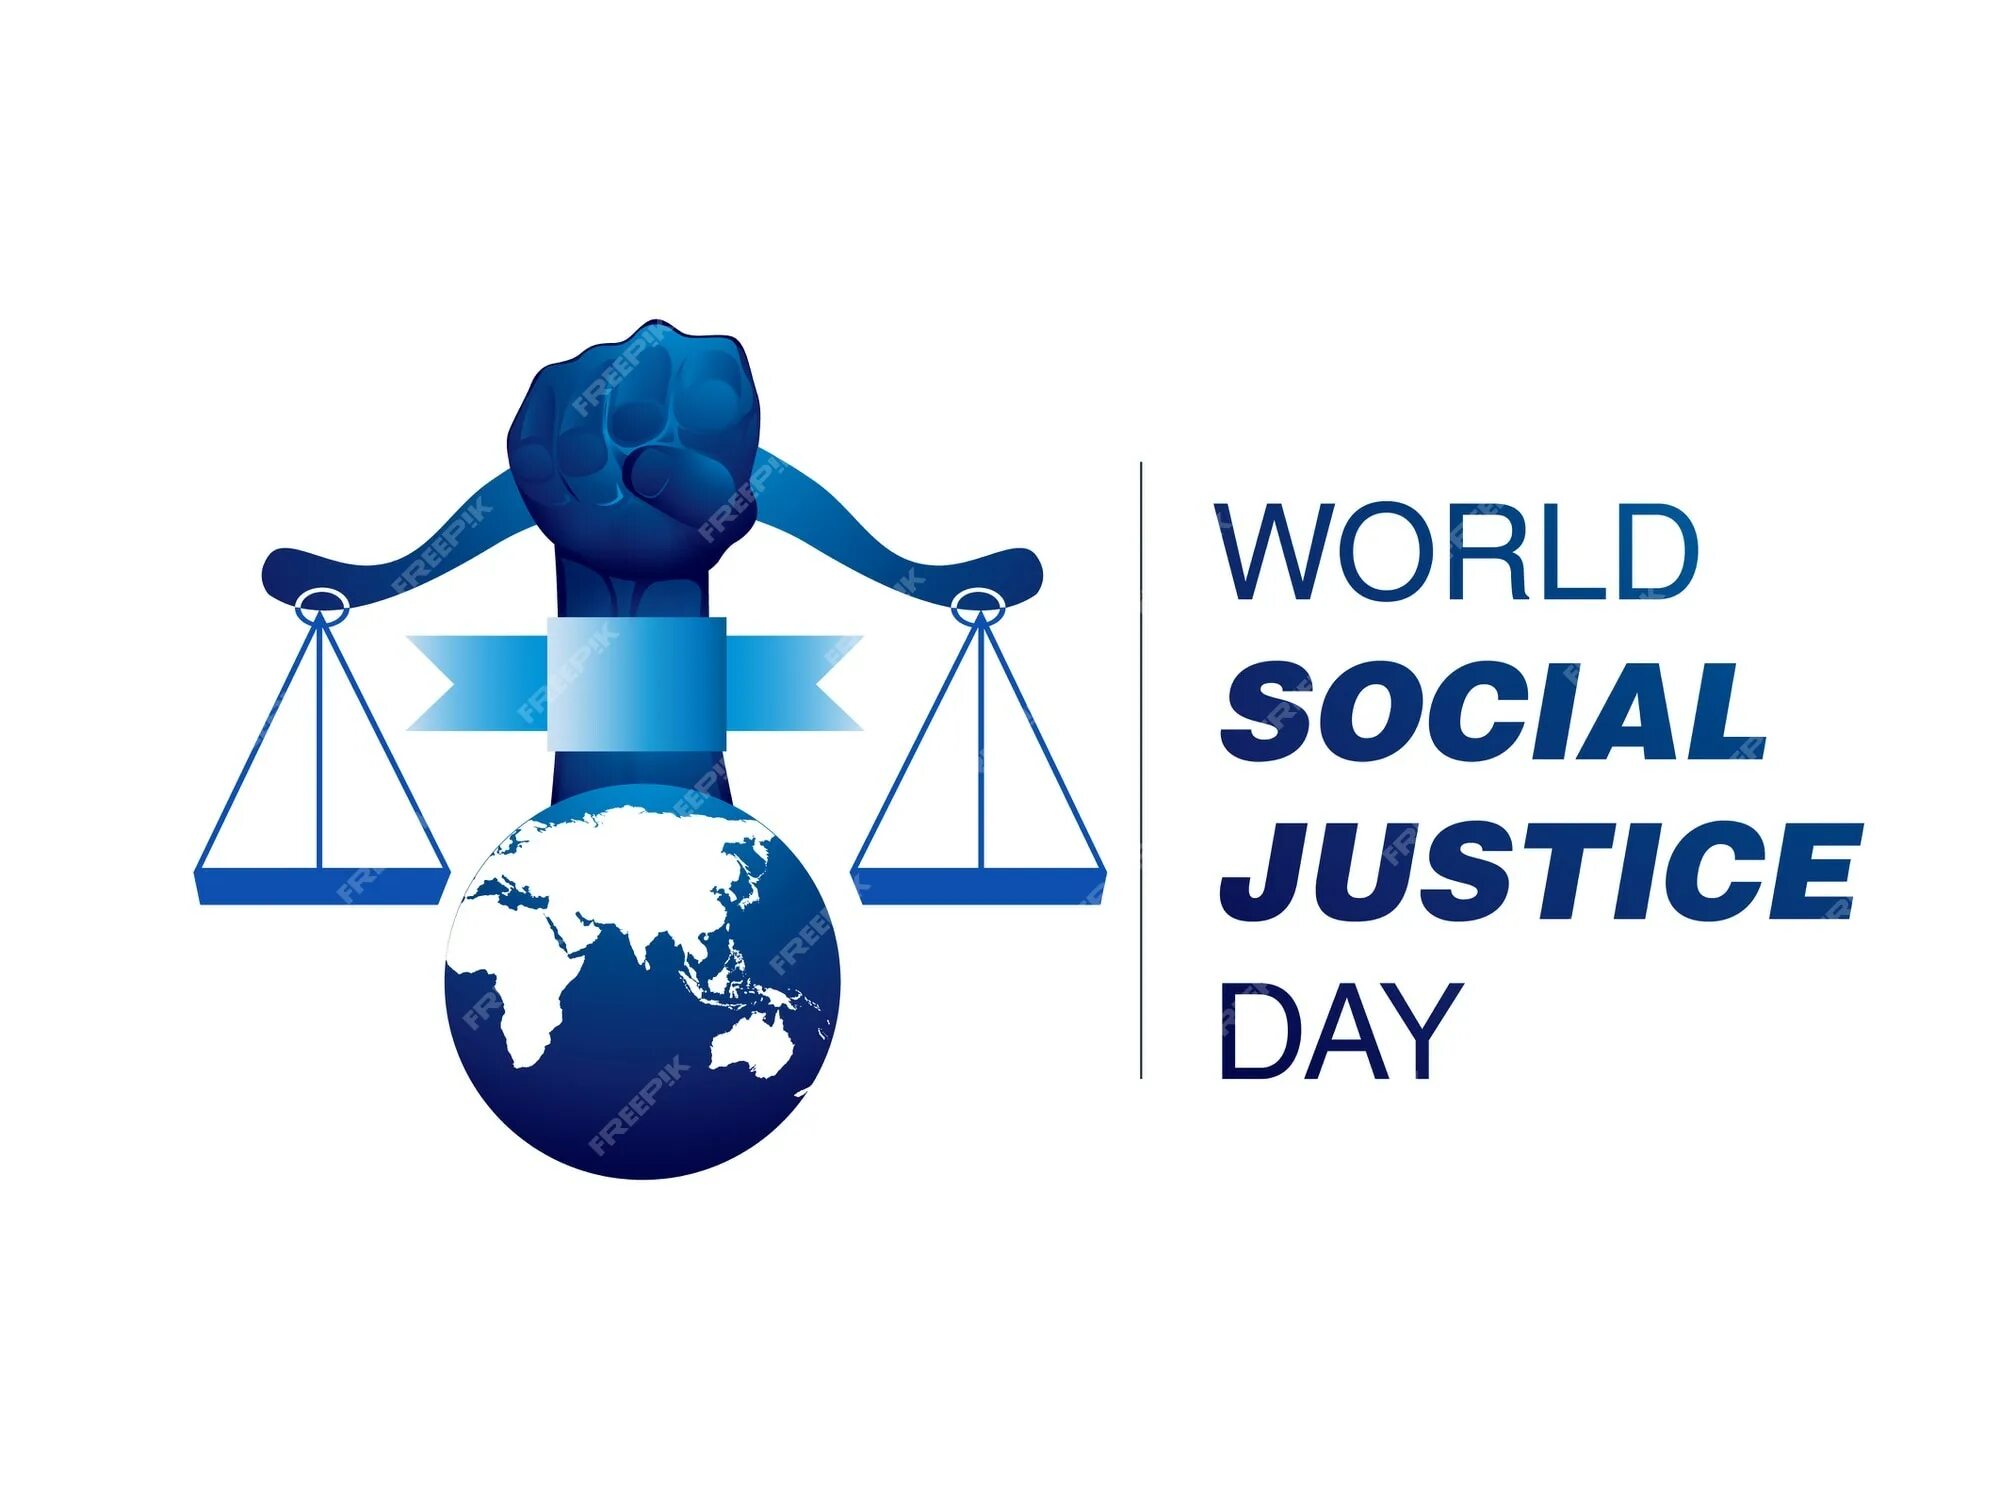 Social justice. О социальной справедливости. День социальной справедливости. Всемирный день соц справедливости. Всемирный день социальной справедливости 20 февраля.